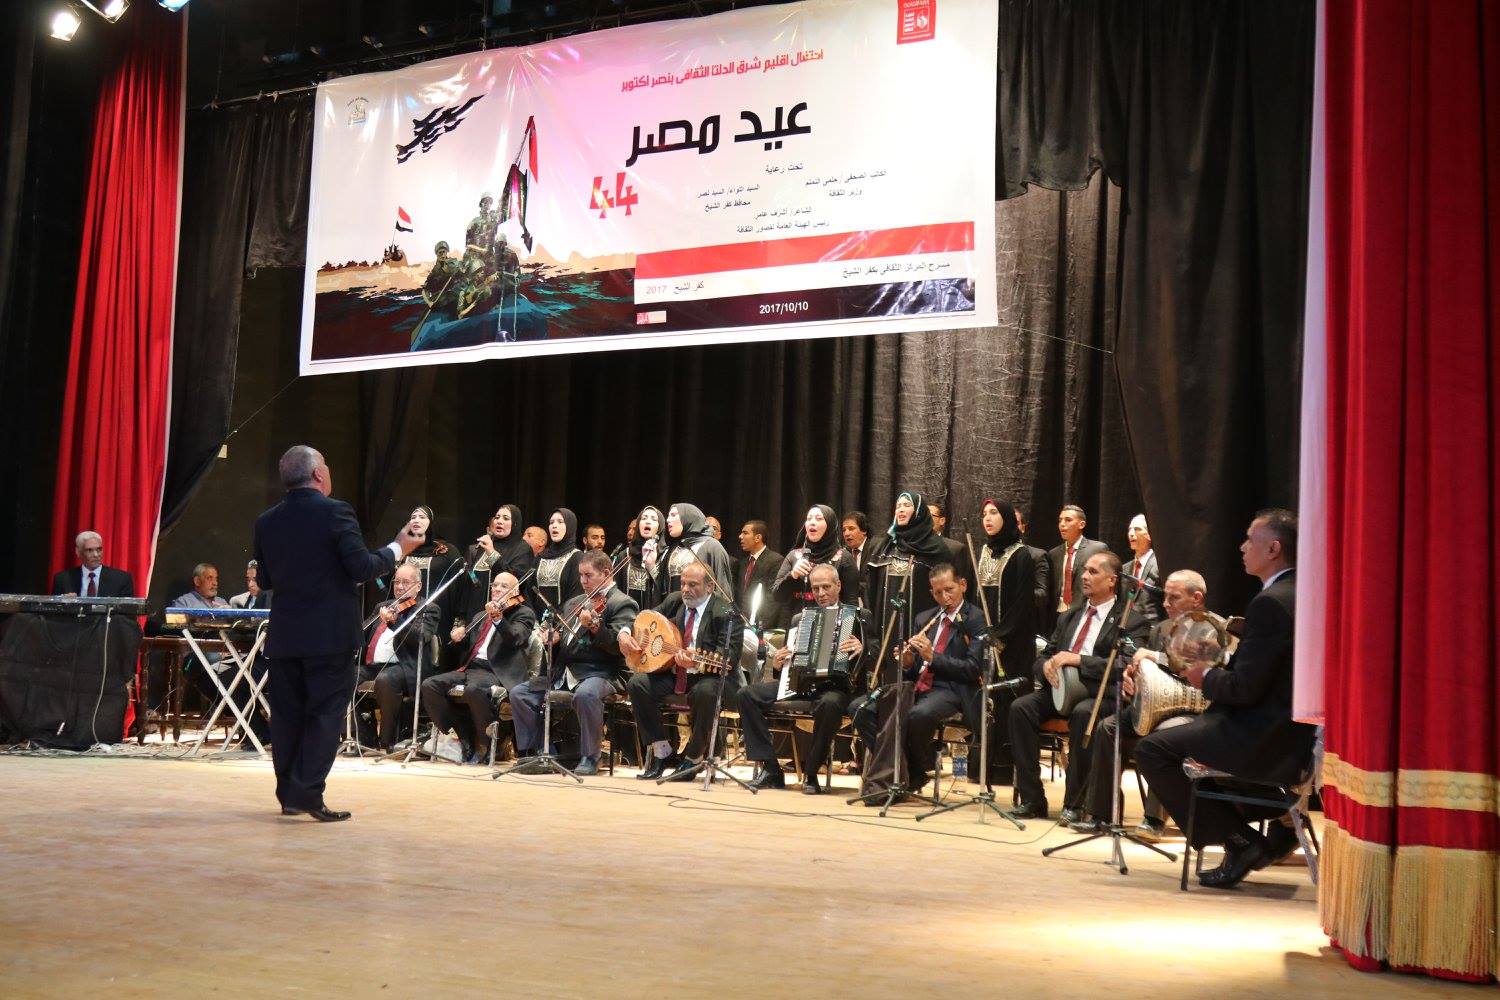  فرقة الموسيقى العربية تقدم العديد من الفقرات الغنائية